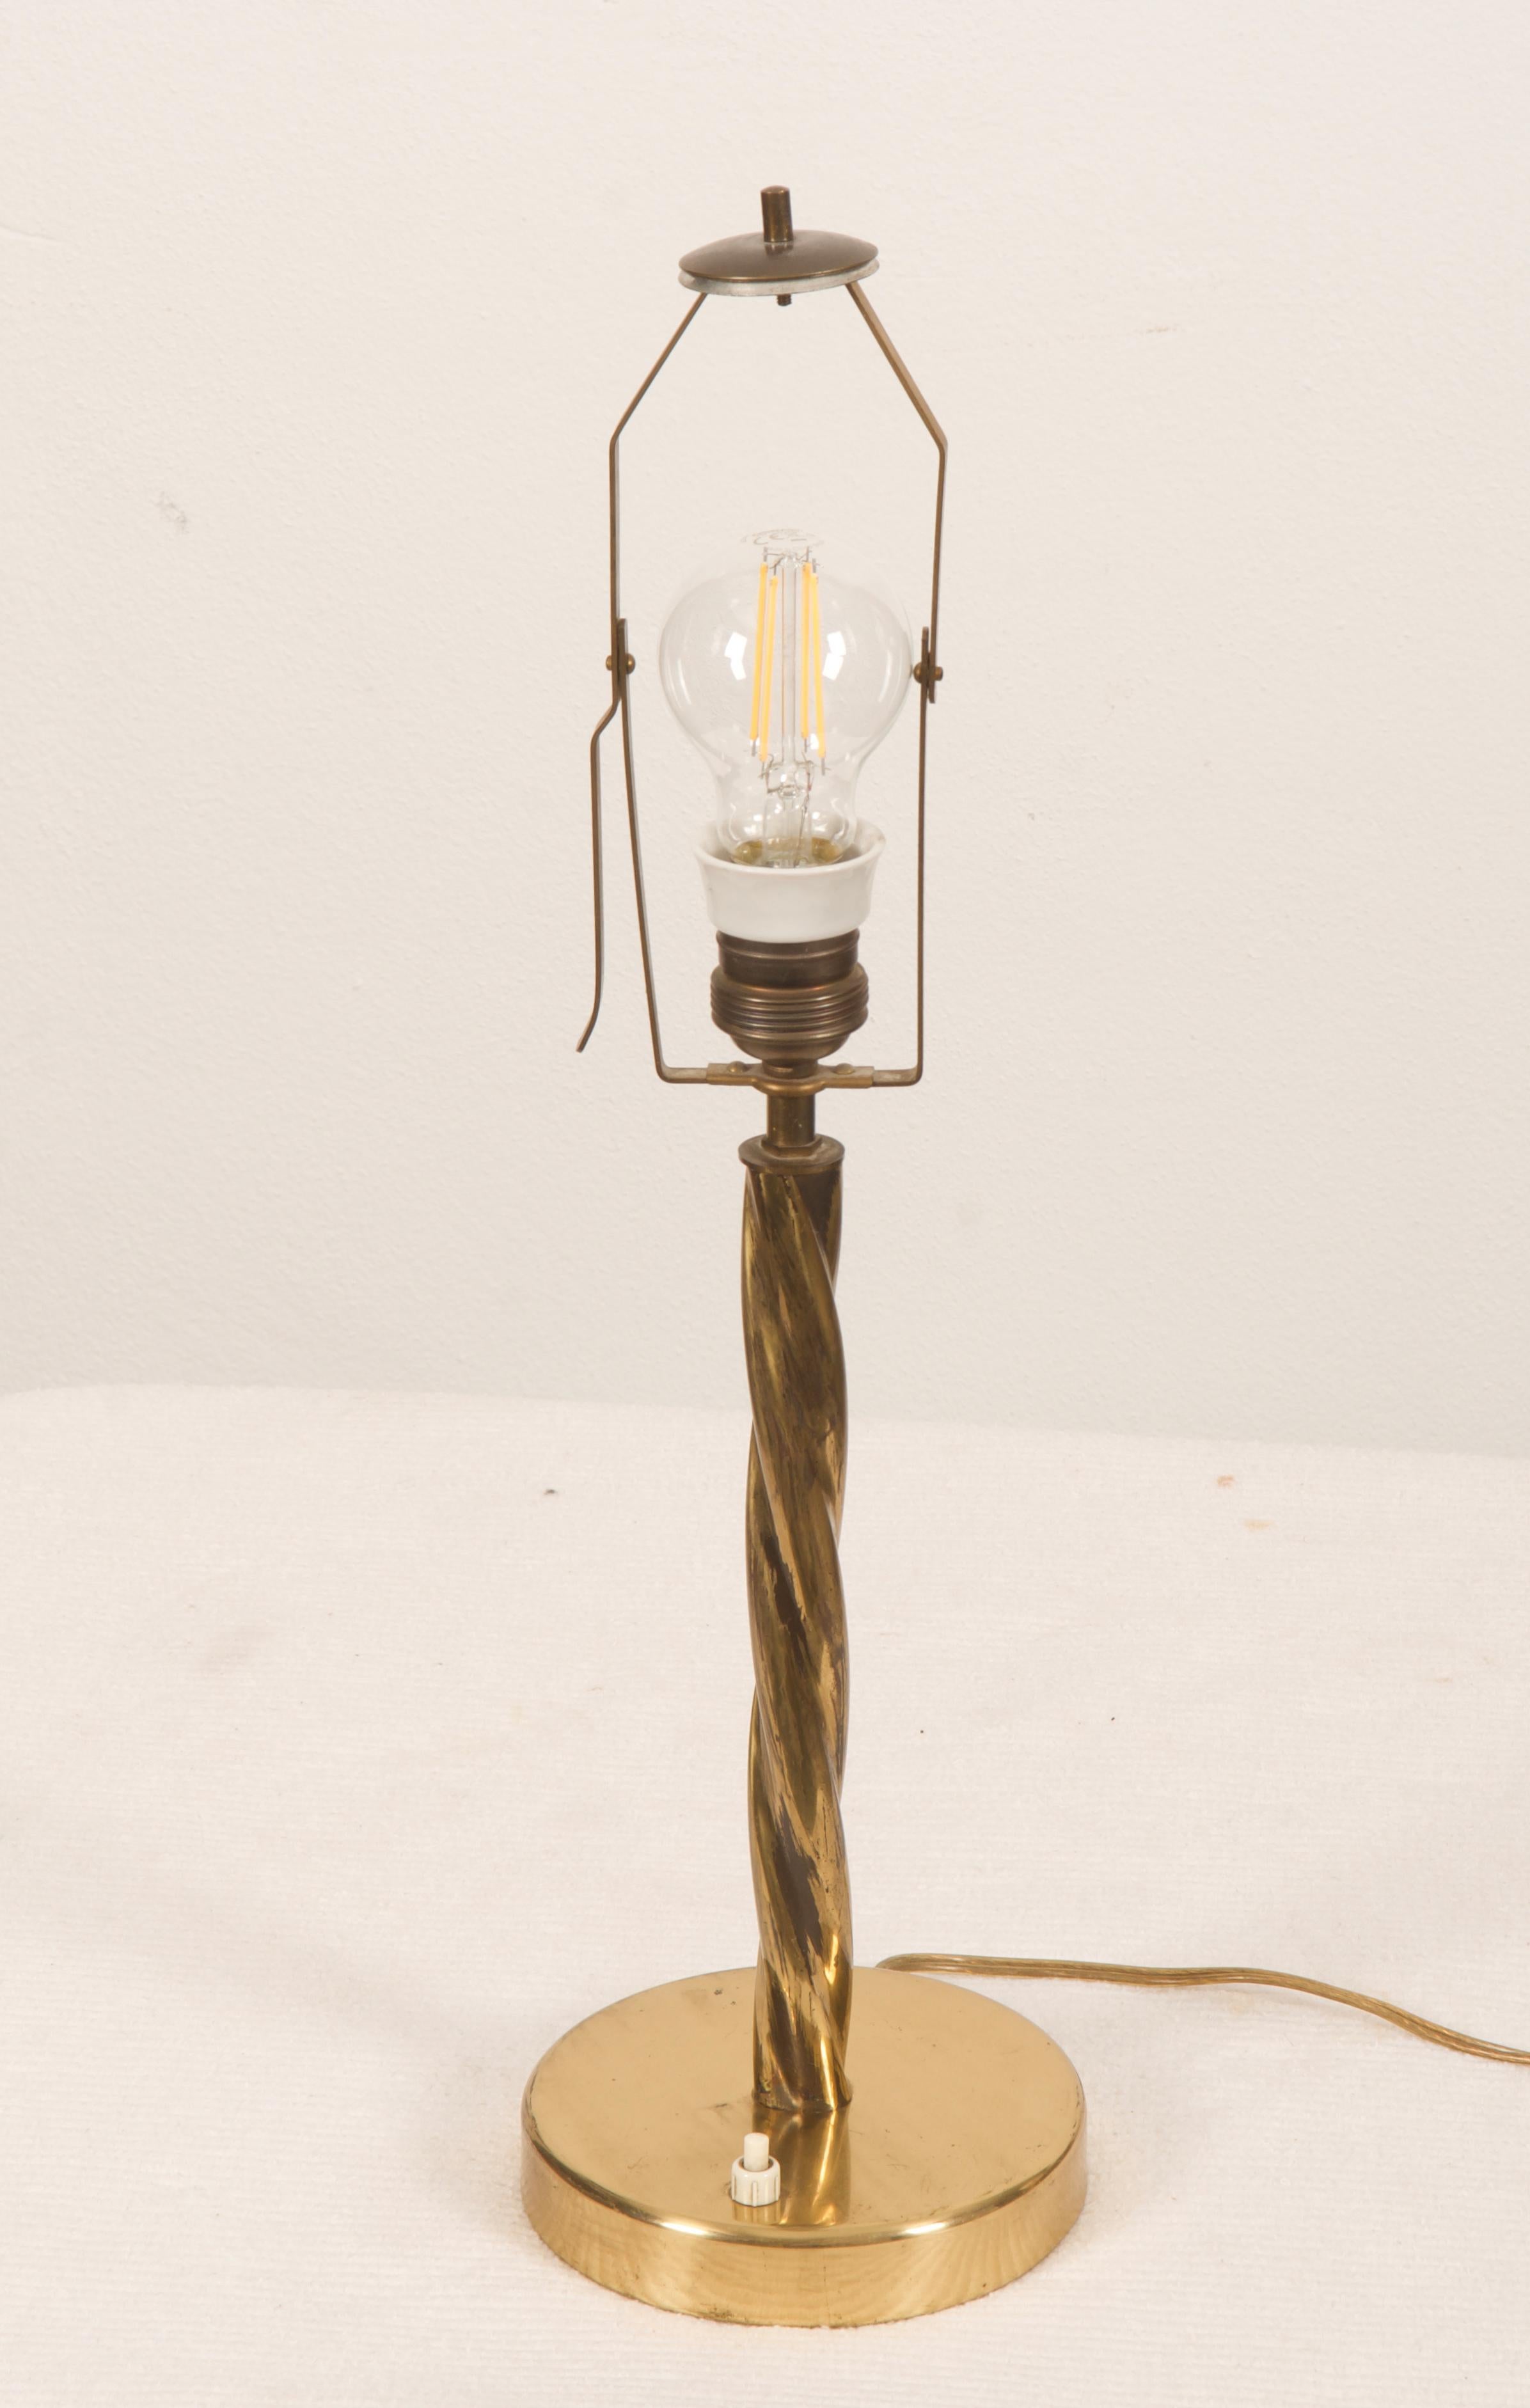 Messing/Stahl-Konstruktion mit einem kegelförmigen Lampenschirm mit einer E27-Fassung. Entworfen um 1950 in Wien.
Schöner Originalzustand.
 